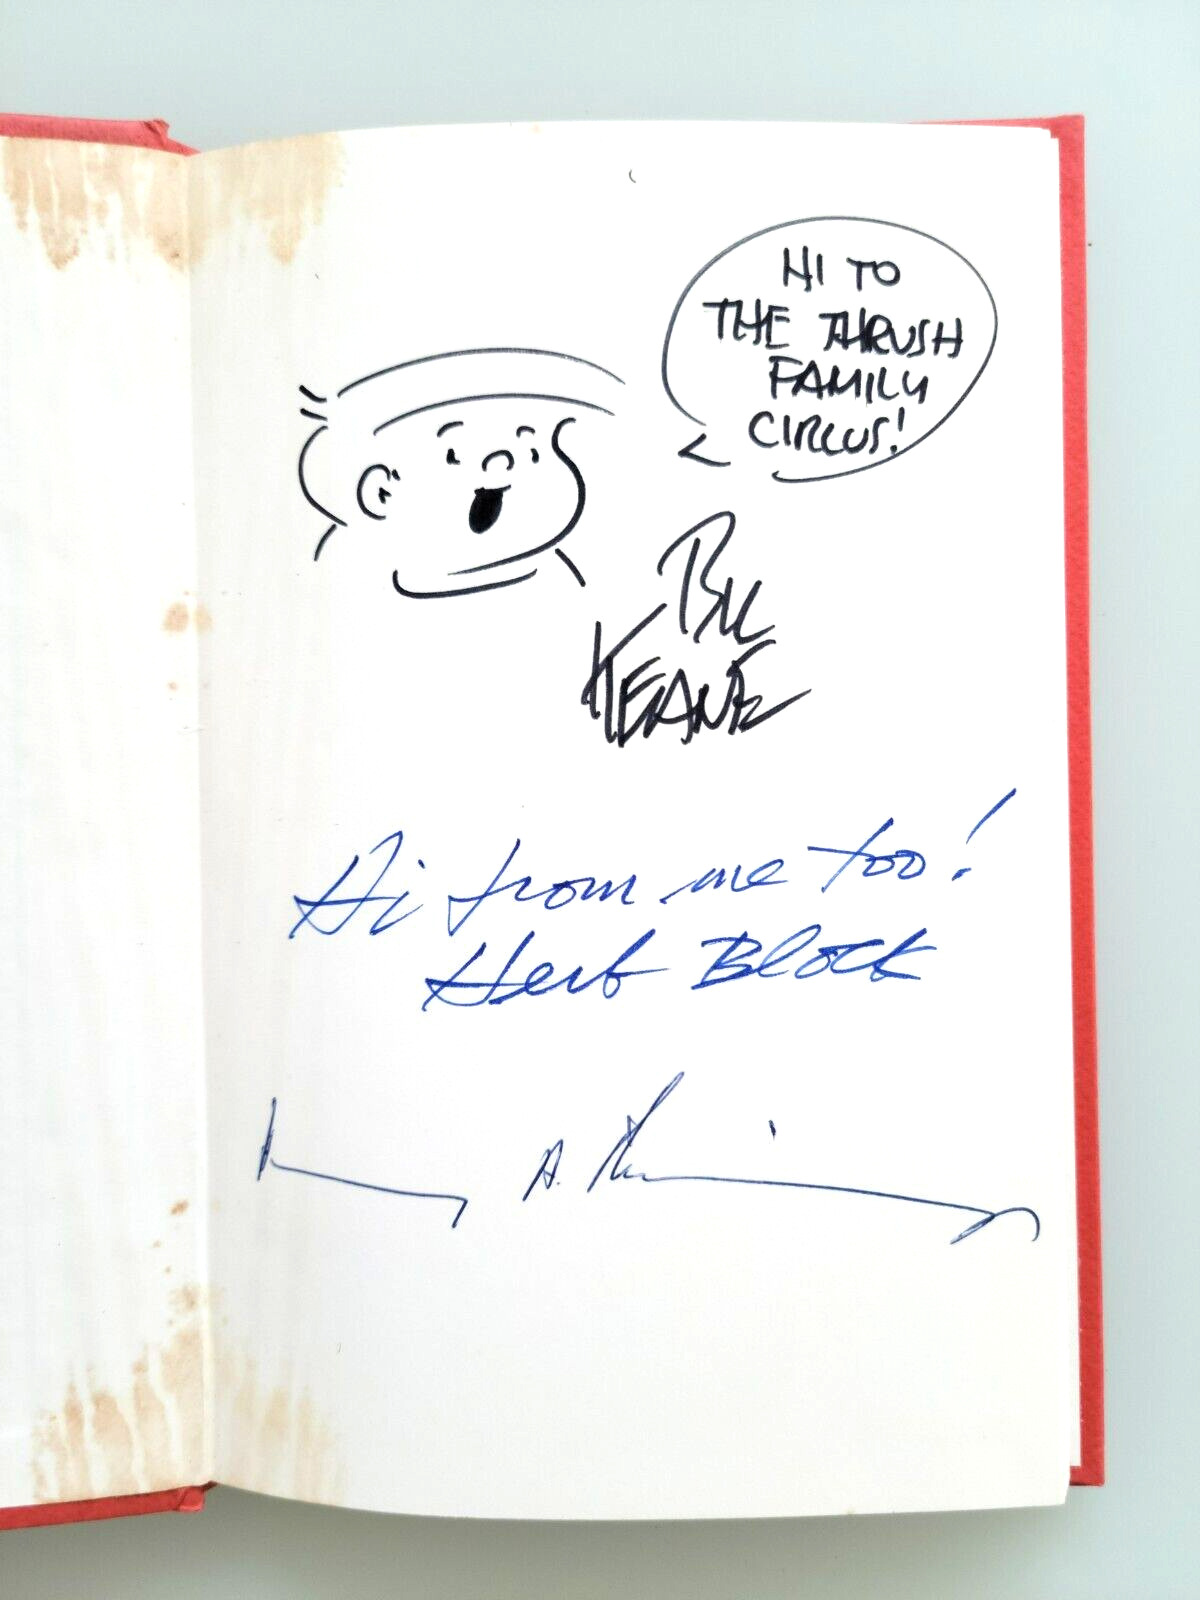 Henry Kissinger, Bill Keane (Family Circus) w/ Herb Block Autographs, Keepsake